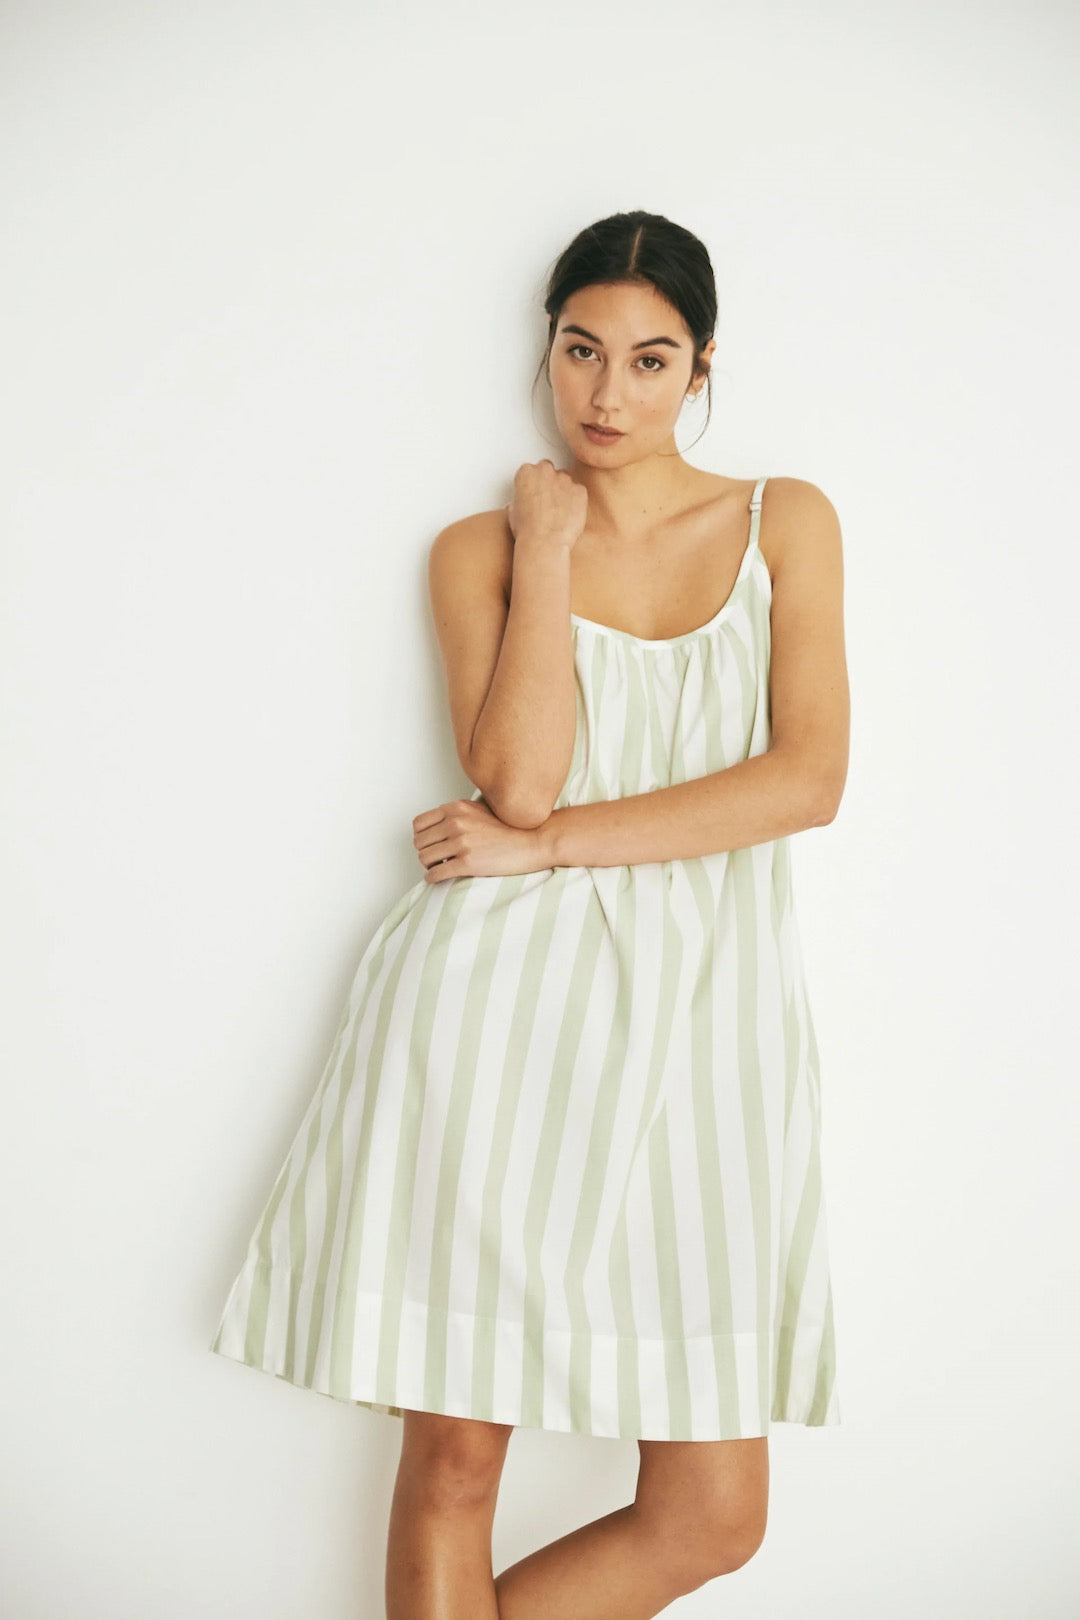 A model wearing the Evie Slip - Pear Stripe slip dress by general sleep.